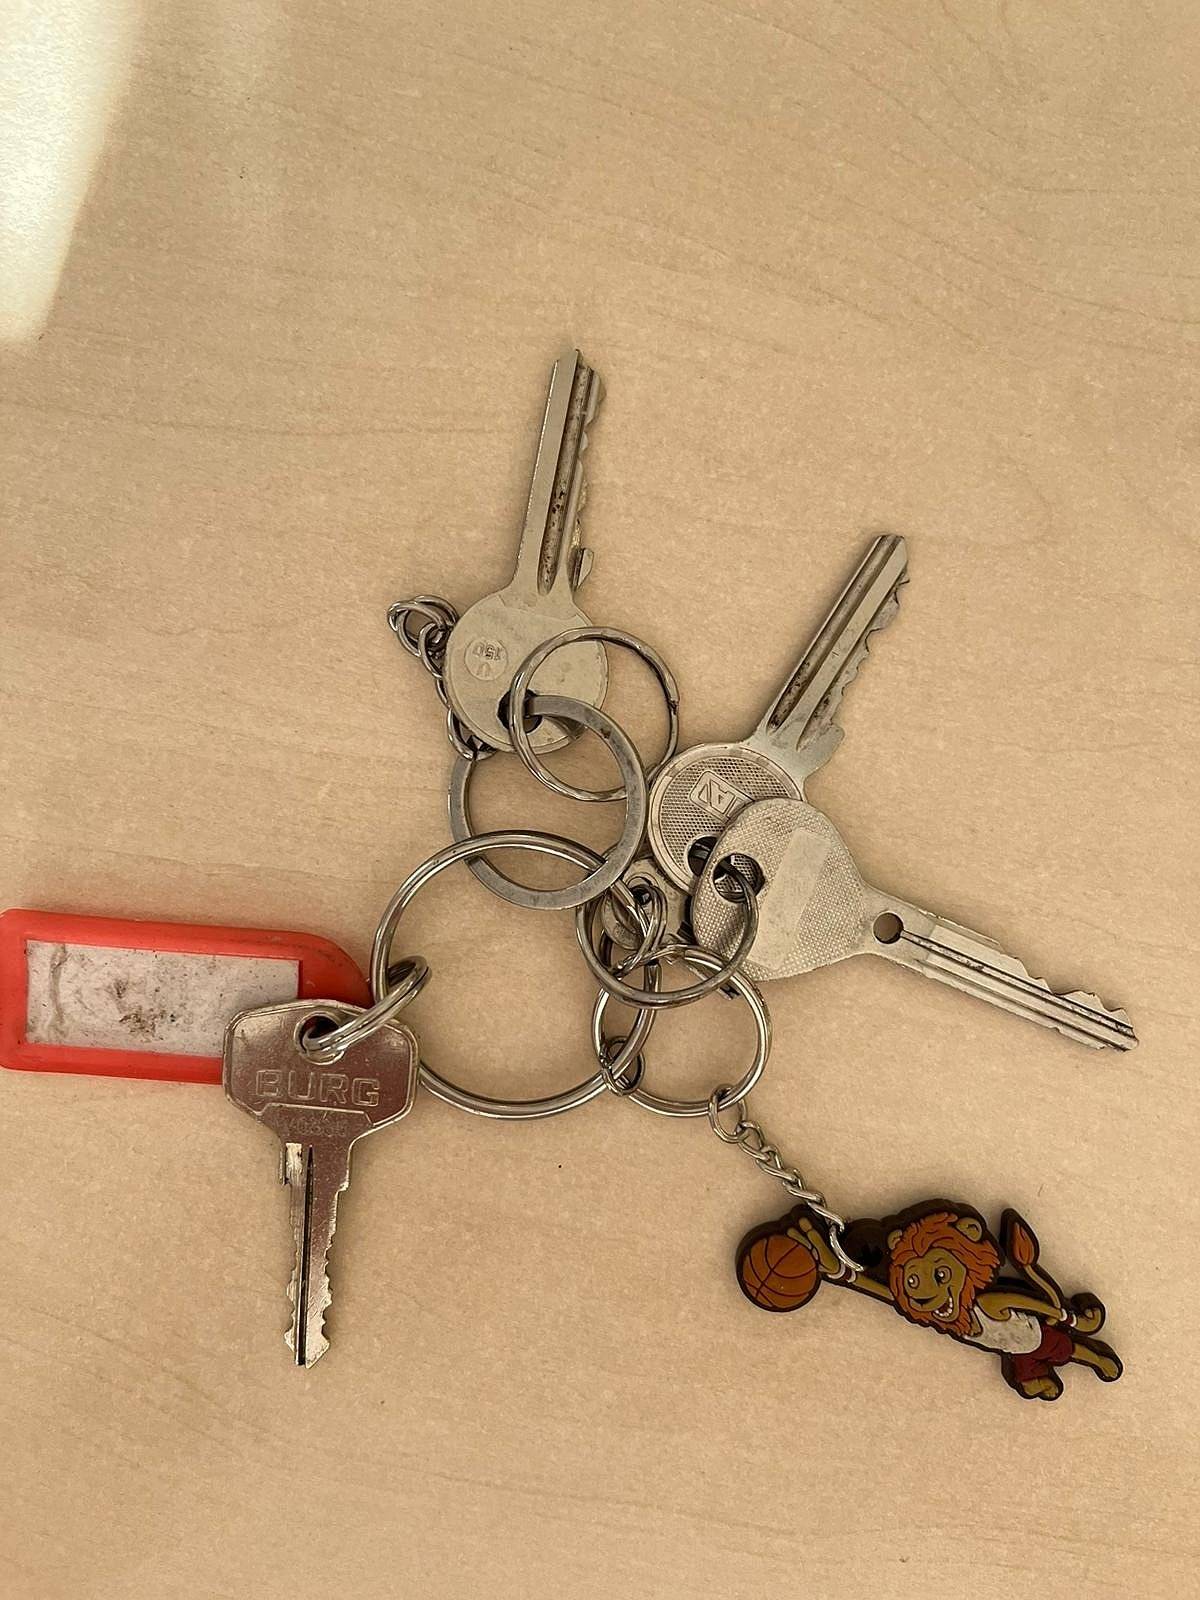 Včera byly nalezeny na sáňkovačce v parku tyto klíče. Vlastník si je může vyzvednout na městském úřadě. 😉